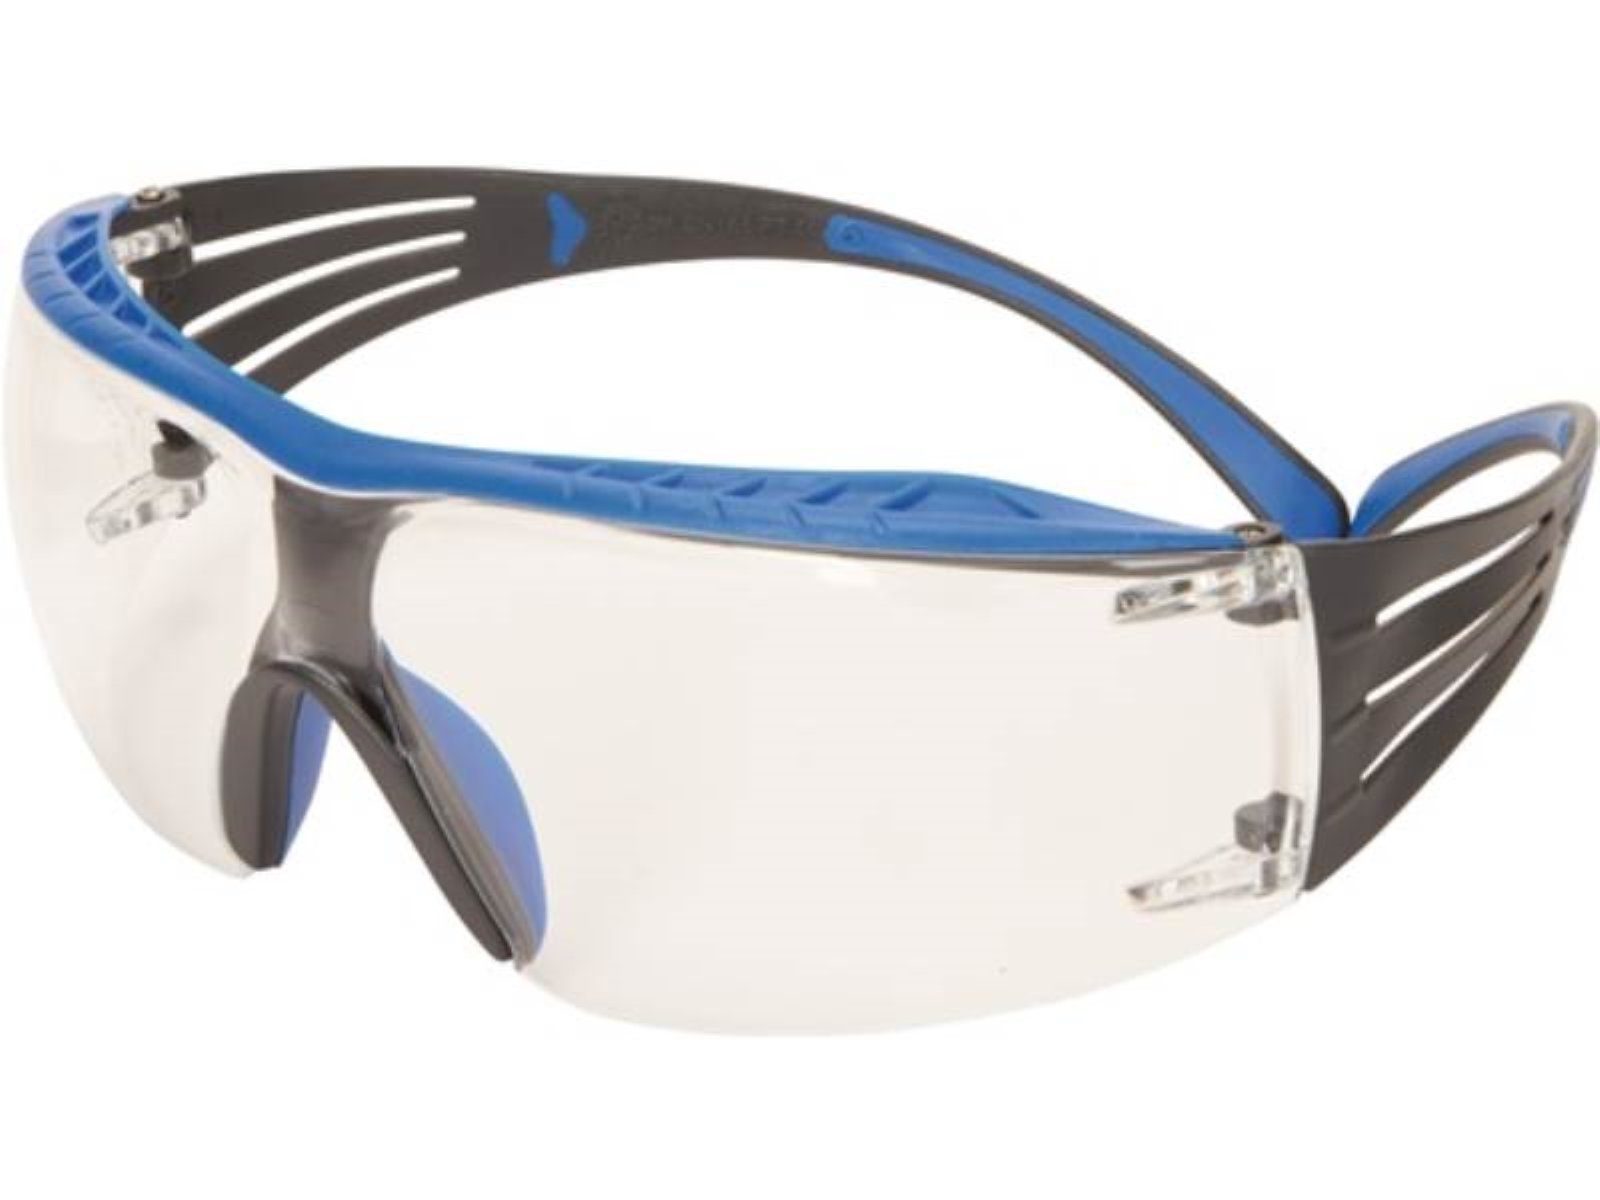 SF401 3 Schutzbrille Bügel SecureFit blau/grau,Scheibe Arbeitsschutzbrille 3M 166 klar EN PC